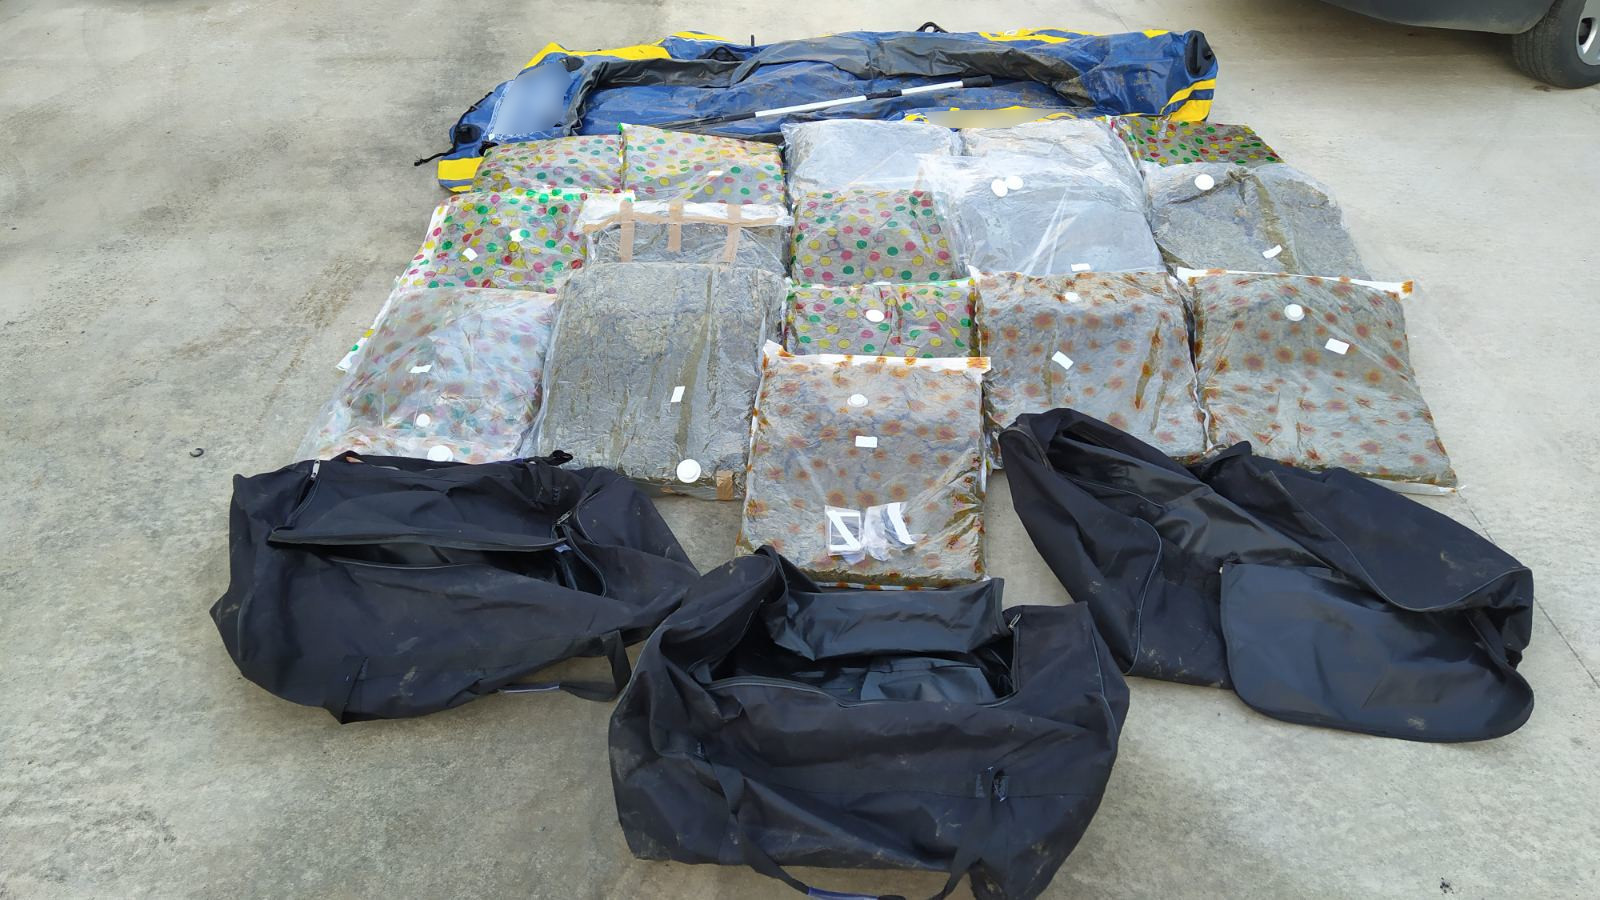 Περίπου 62 κιλά ακατέργαστης κάνναβης κατασχέθηκαν στο πλαίσιο επιχείρησης από αστυνομικούς της Διεύθυνσης Αστυνομίας Ορεστιάδας σε παρέβρια περιοχή του Έβρου